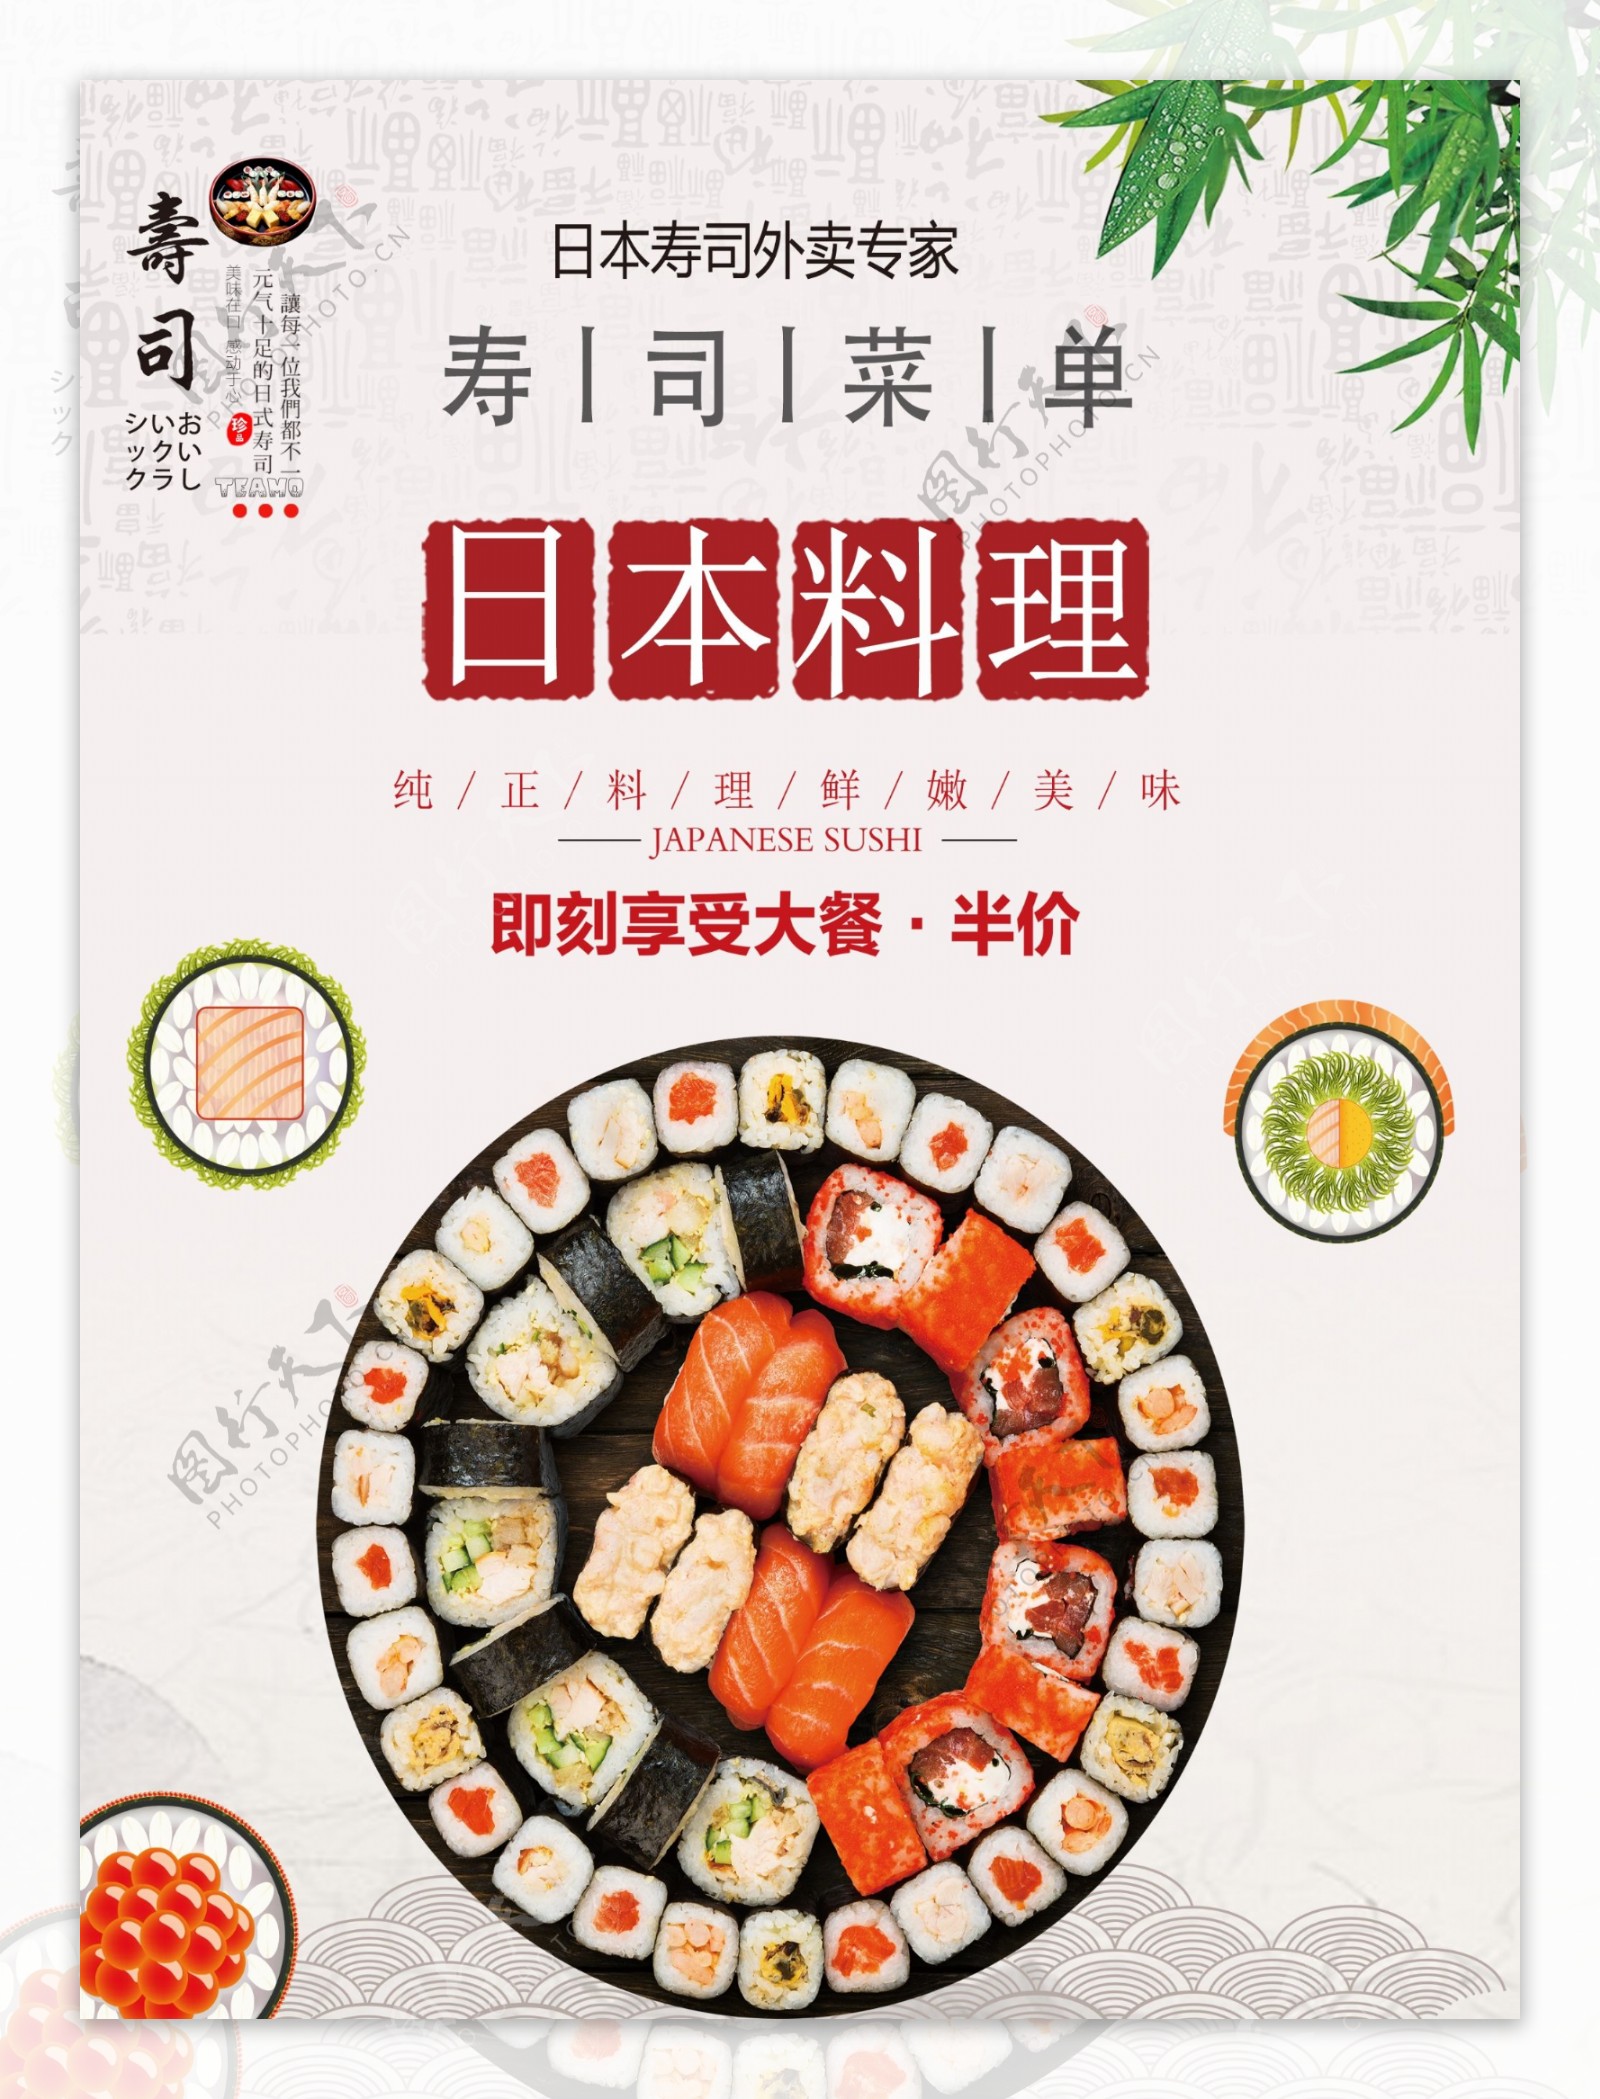 创意寿司菜单设计模板图